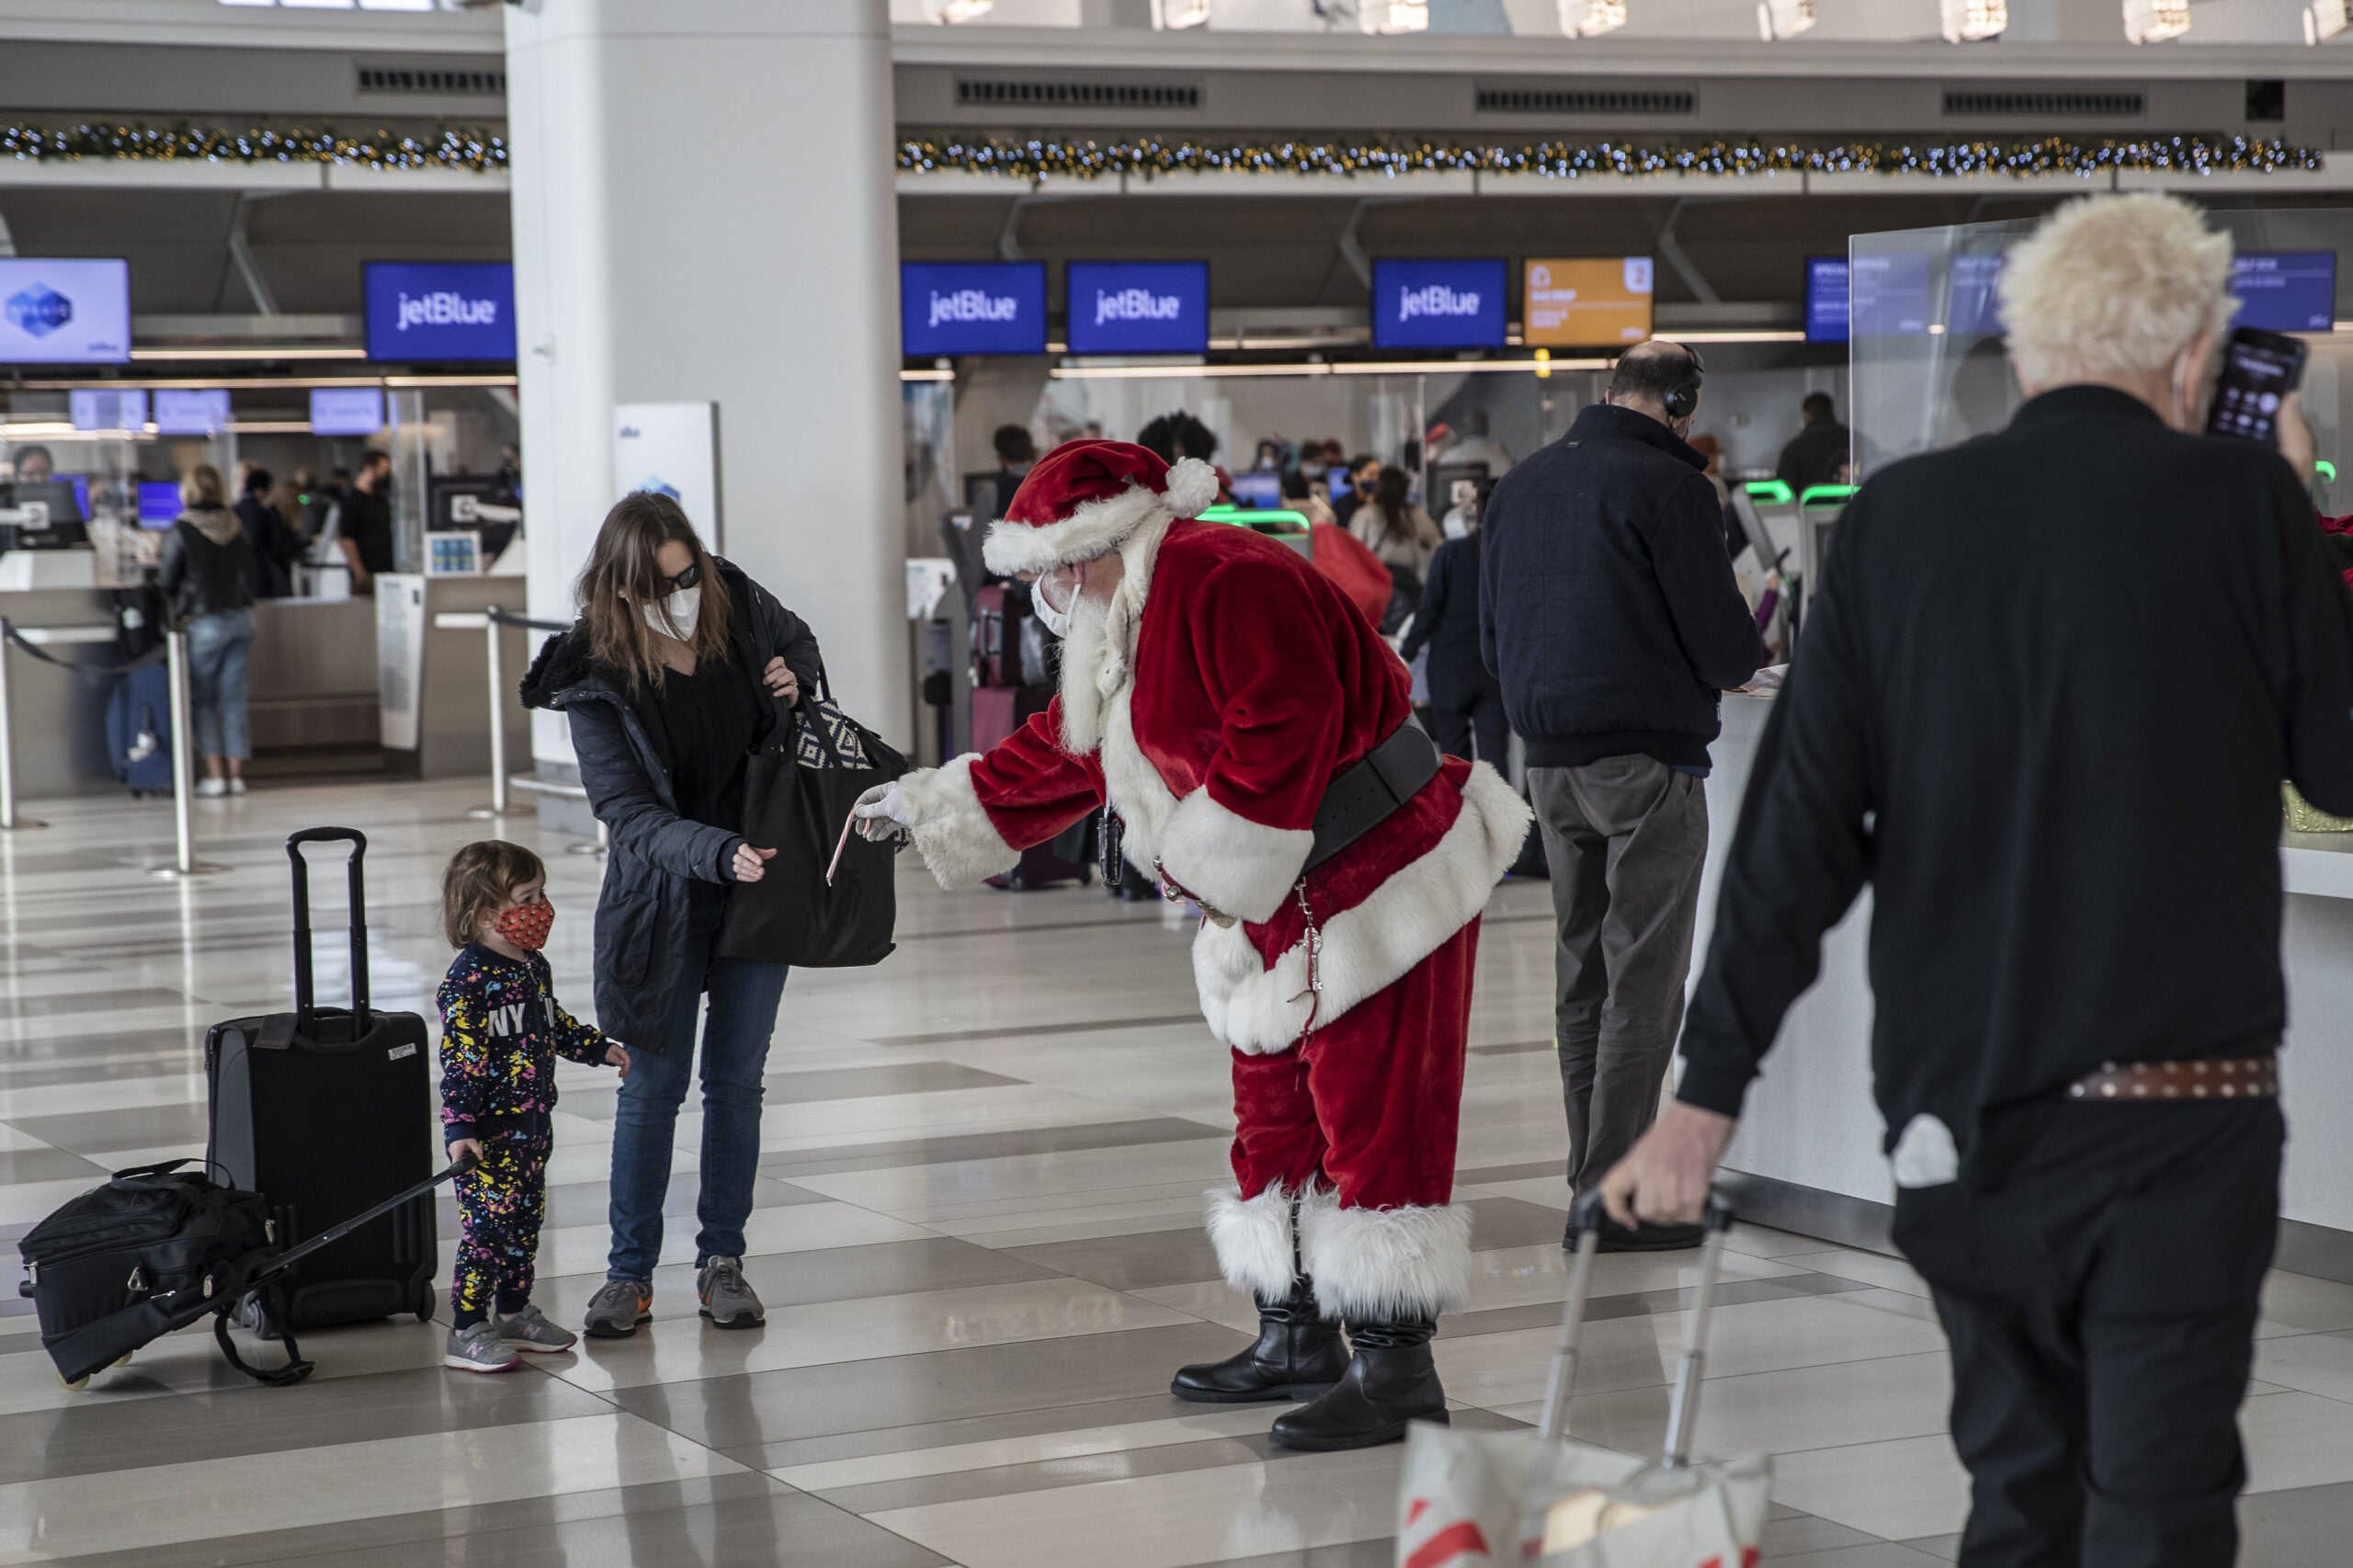 Santa greets passengers at airport